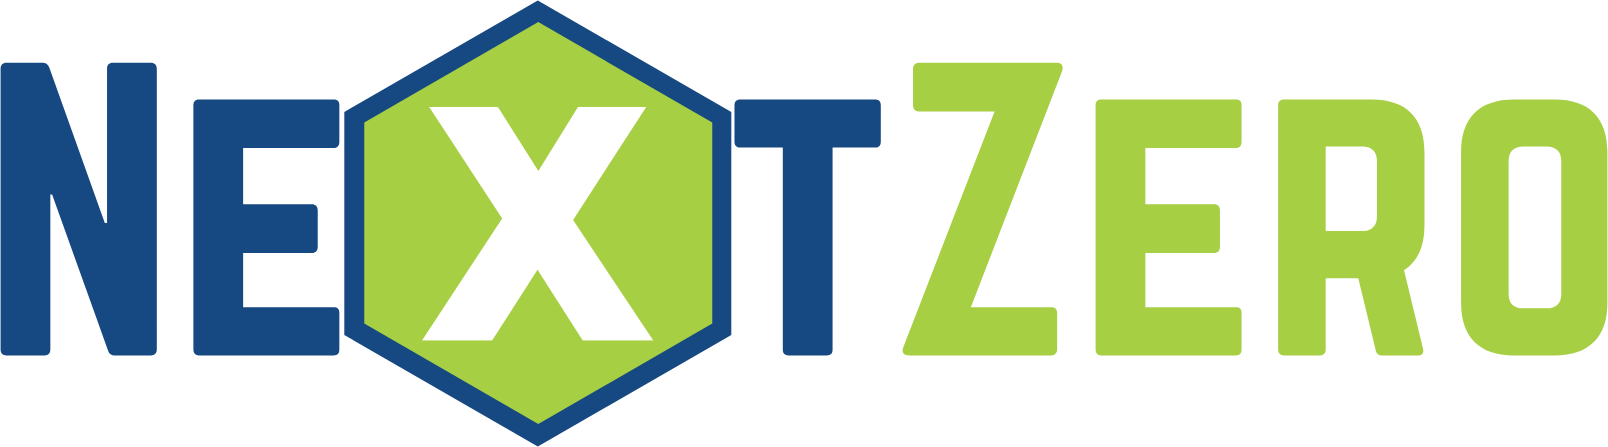 NextZero logo